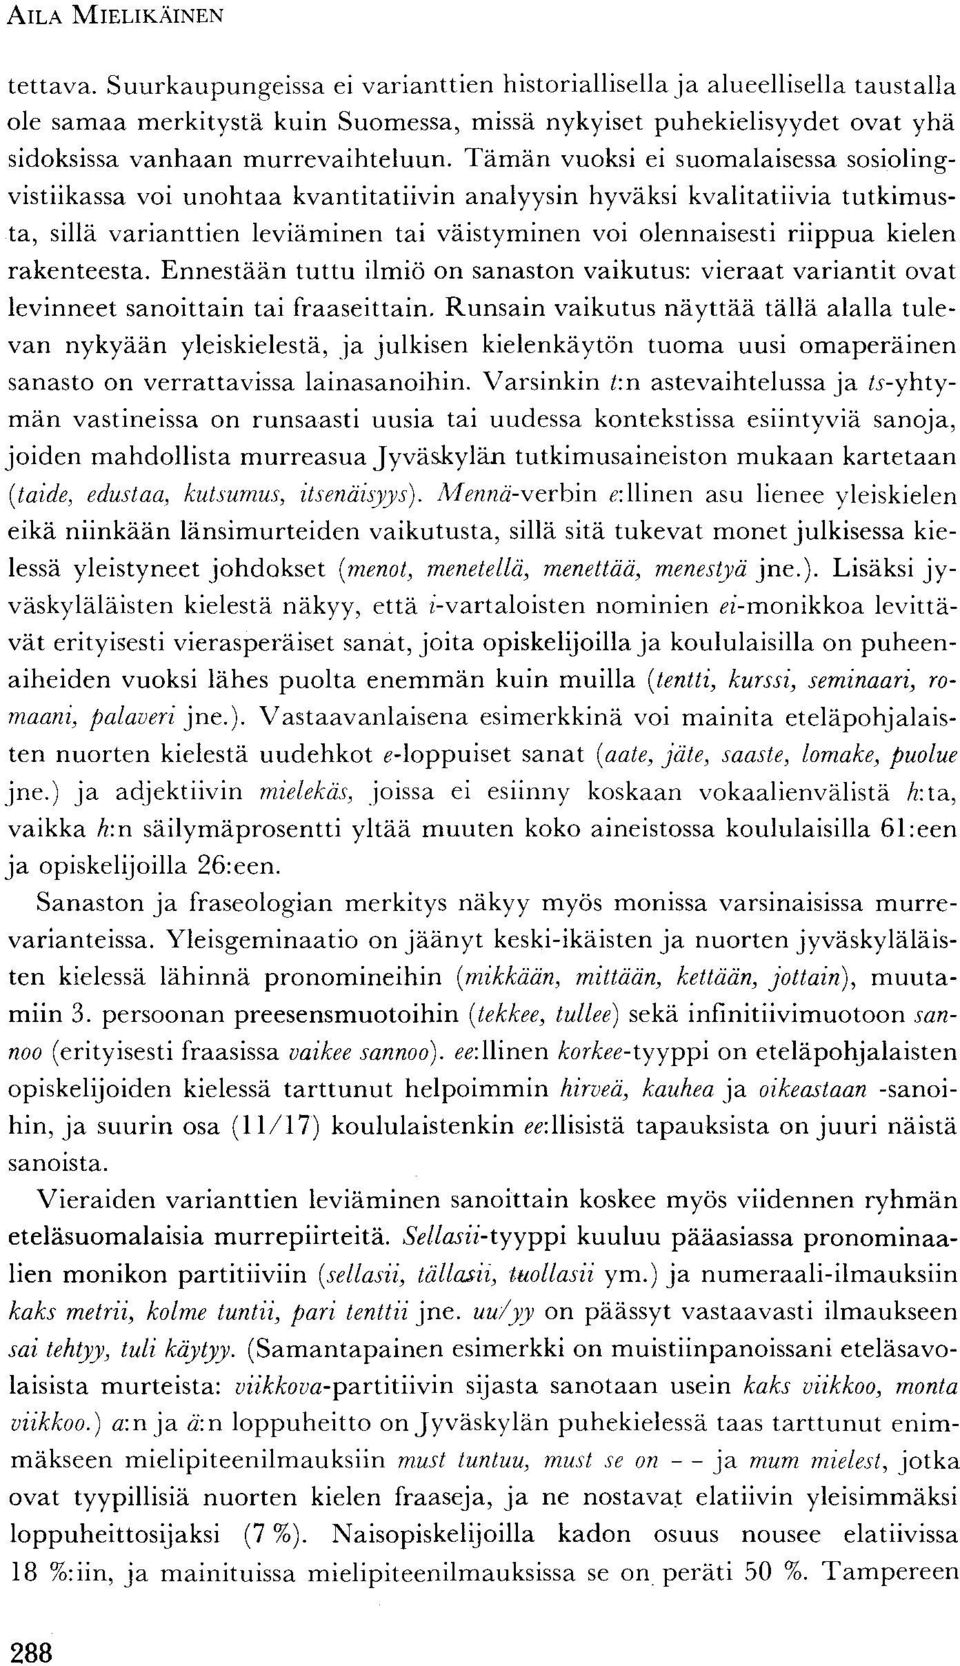 Tämän vuoksi ei suomalaisessa sosiolingvistiikassa voi unohtaa kvantitatiivin analyysin hyväksi kvalitatiivia tutkimusta, sillä varianttien leviäminen tai väistyminen voi olennaisesti riippua kielen